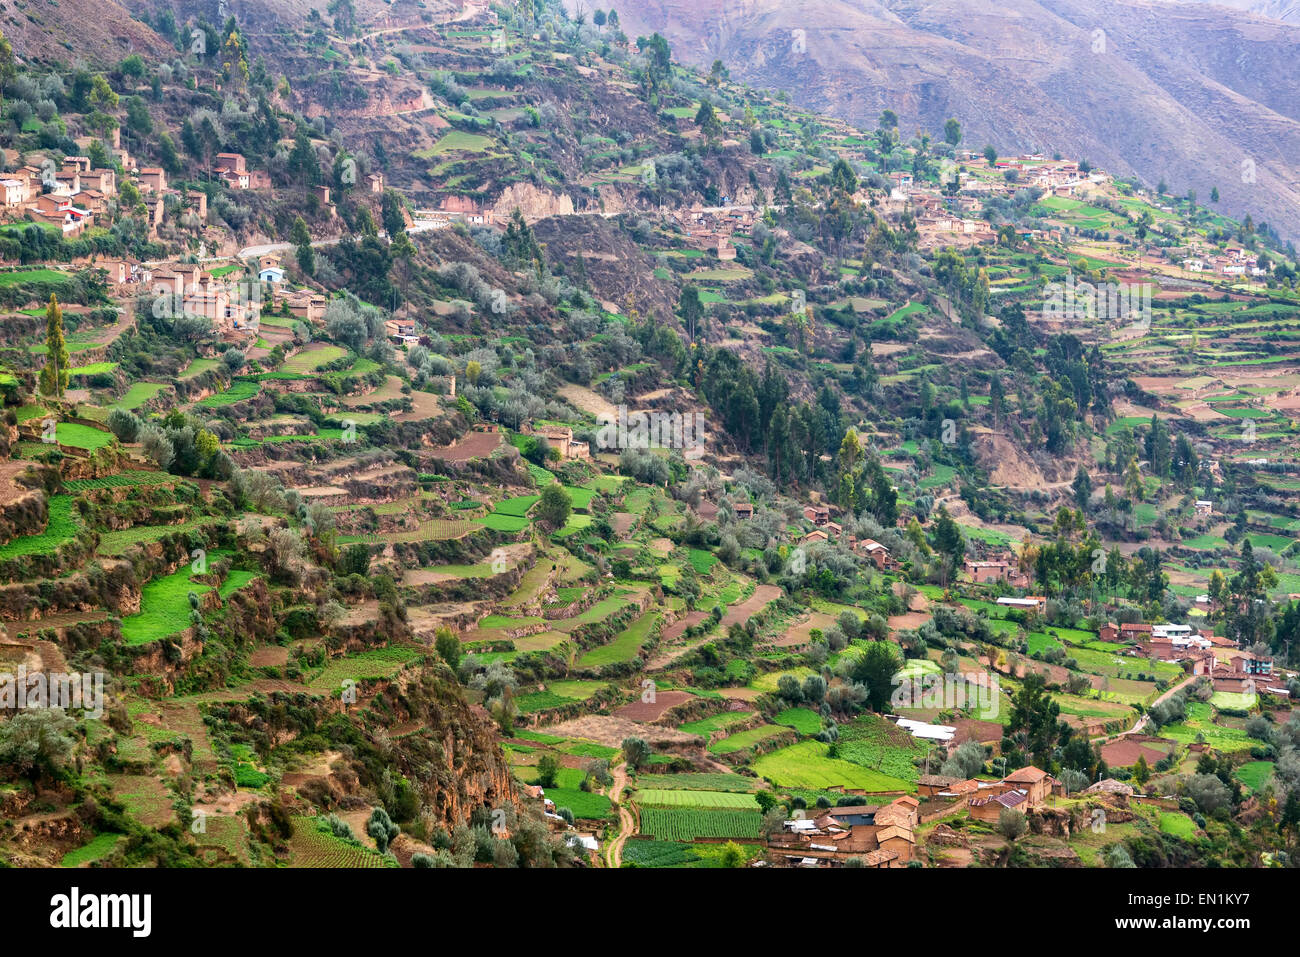 Lush green farming terraces in Tarma, Peru Stock Photo